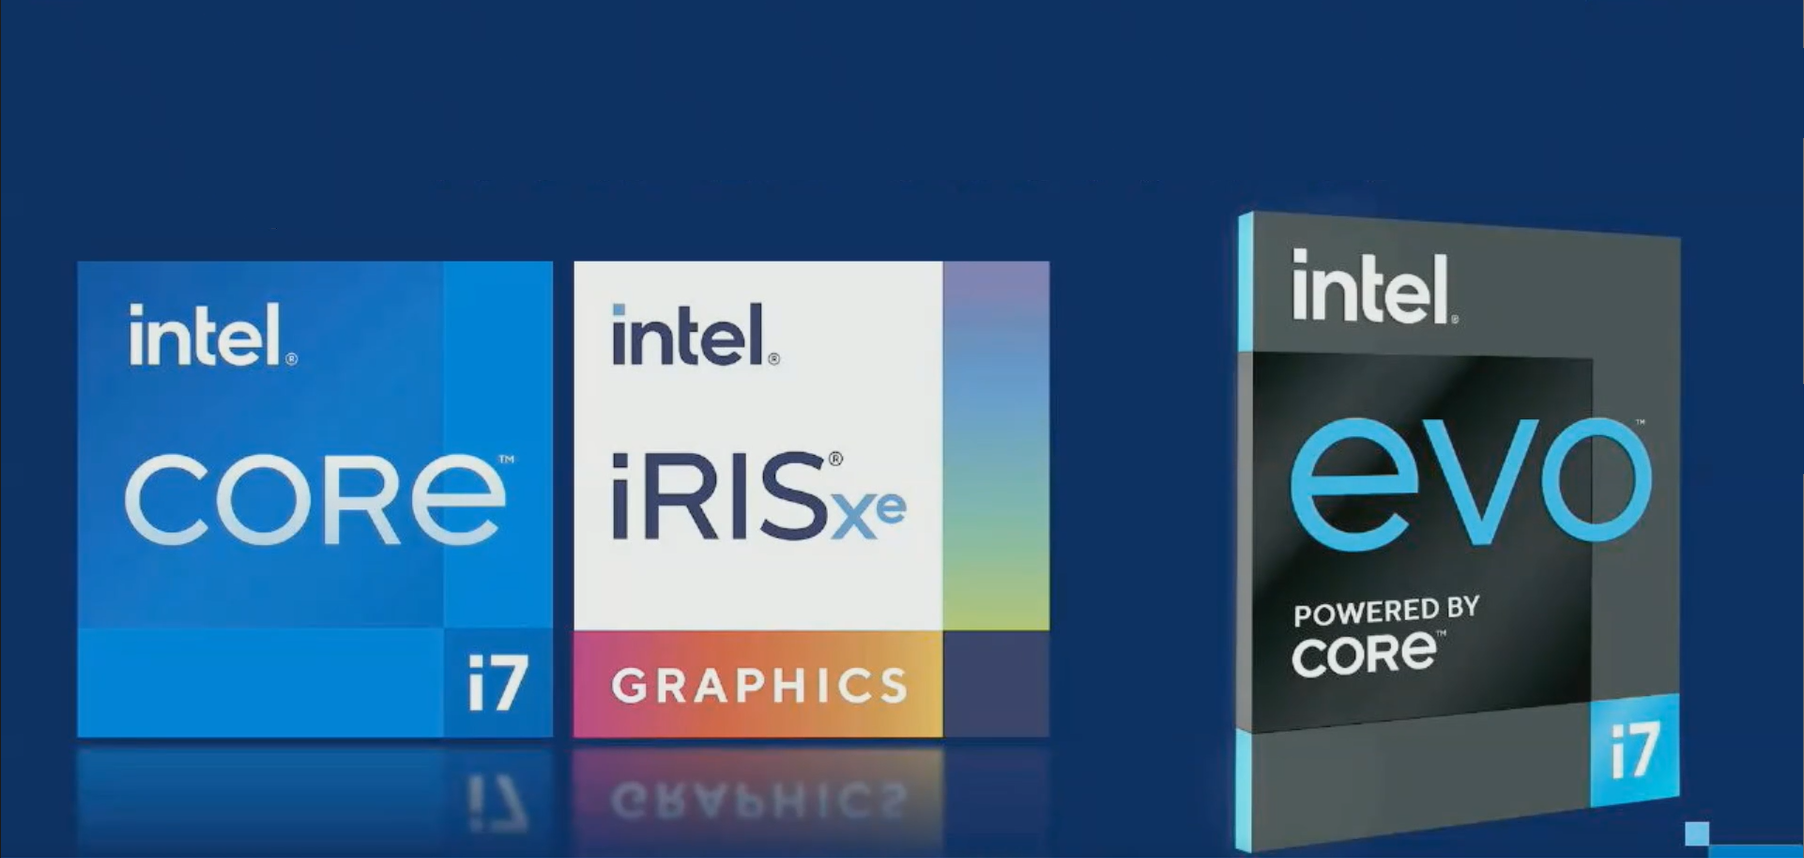 Ryzenよりも高性能と第世代Coreをアピール。インテル PC FES